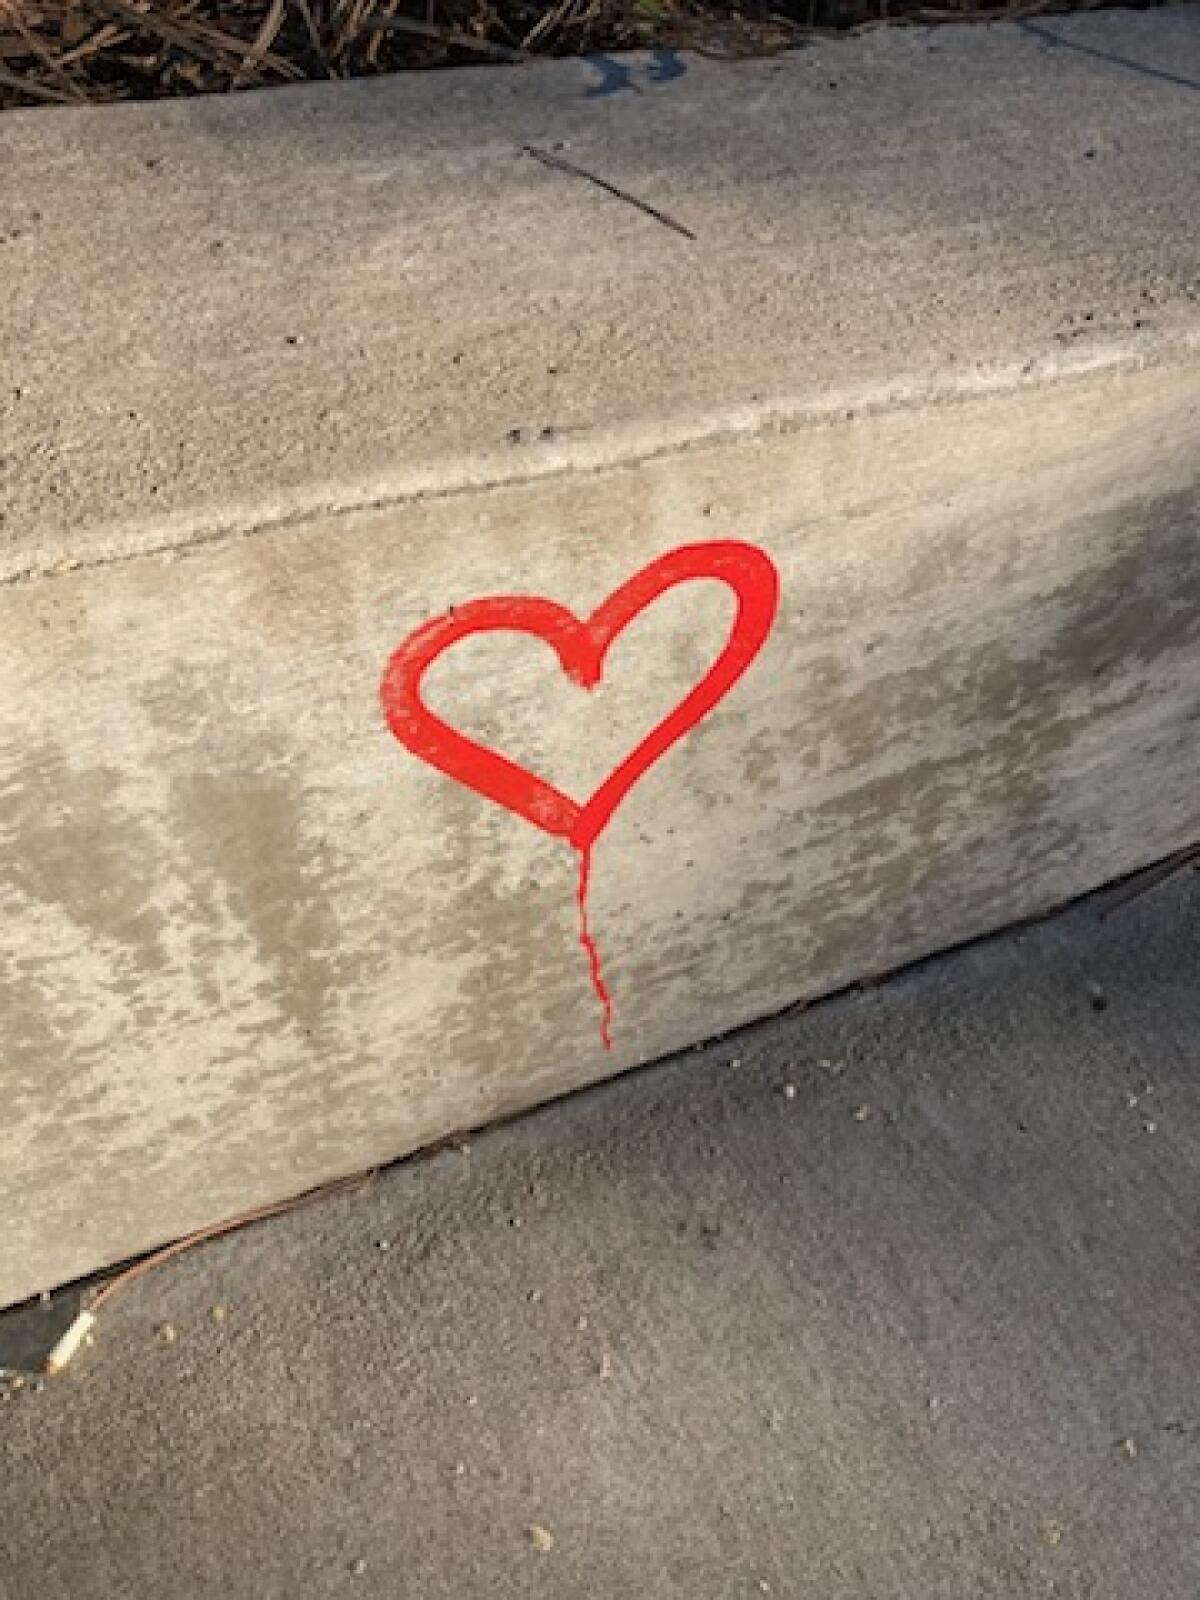 This graffiti heart in La Jolla was removed.